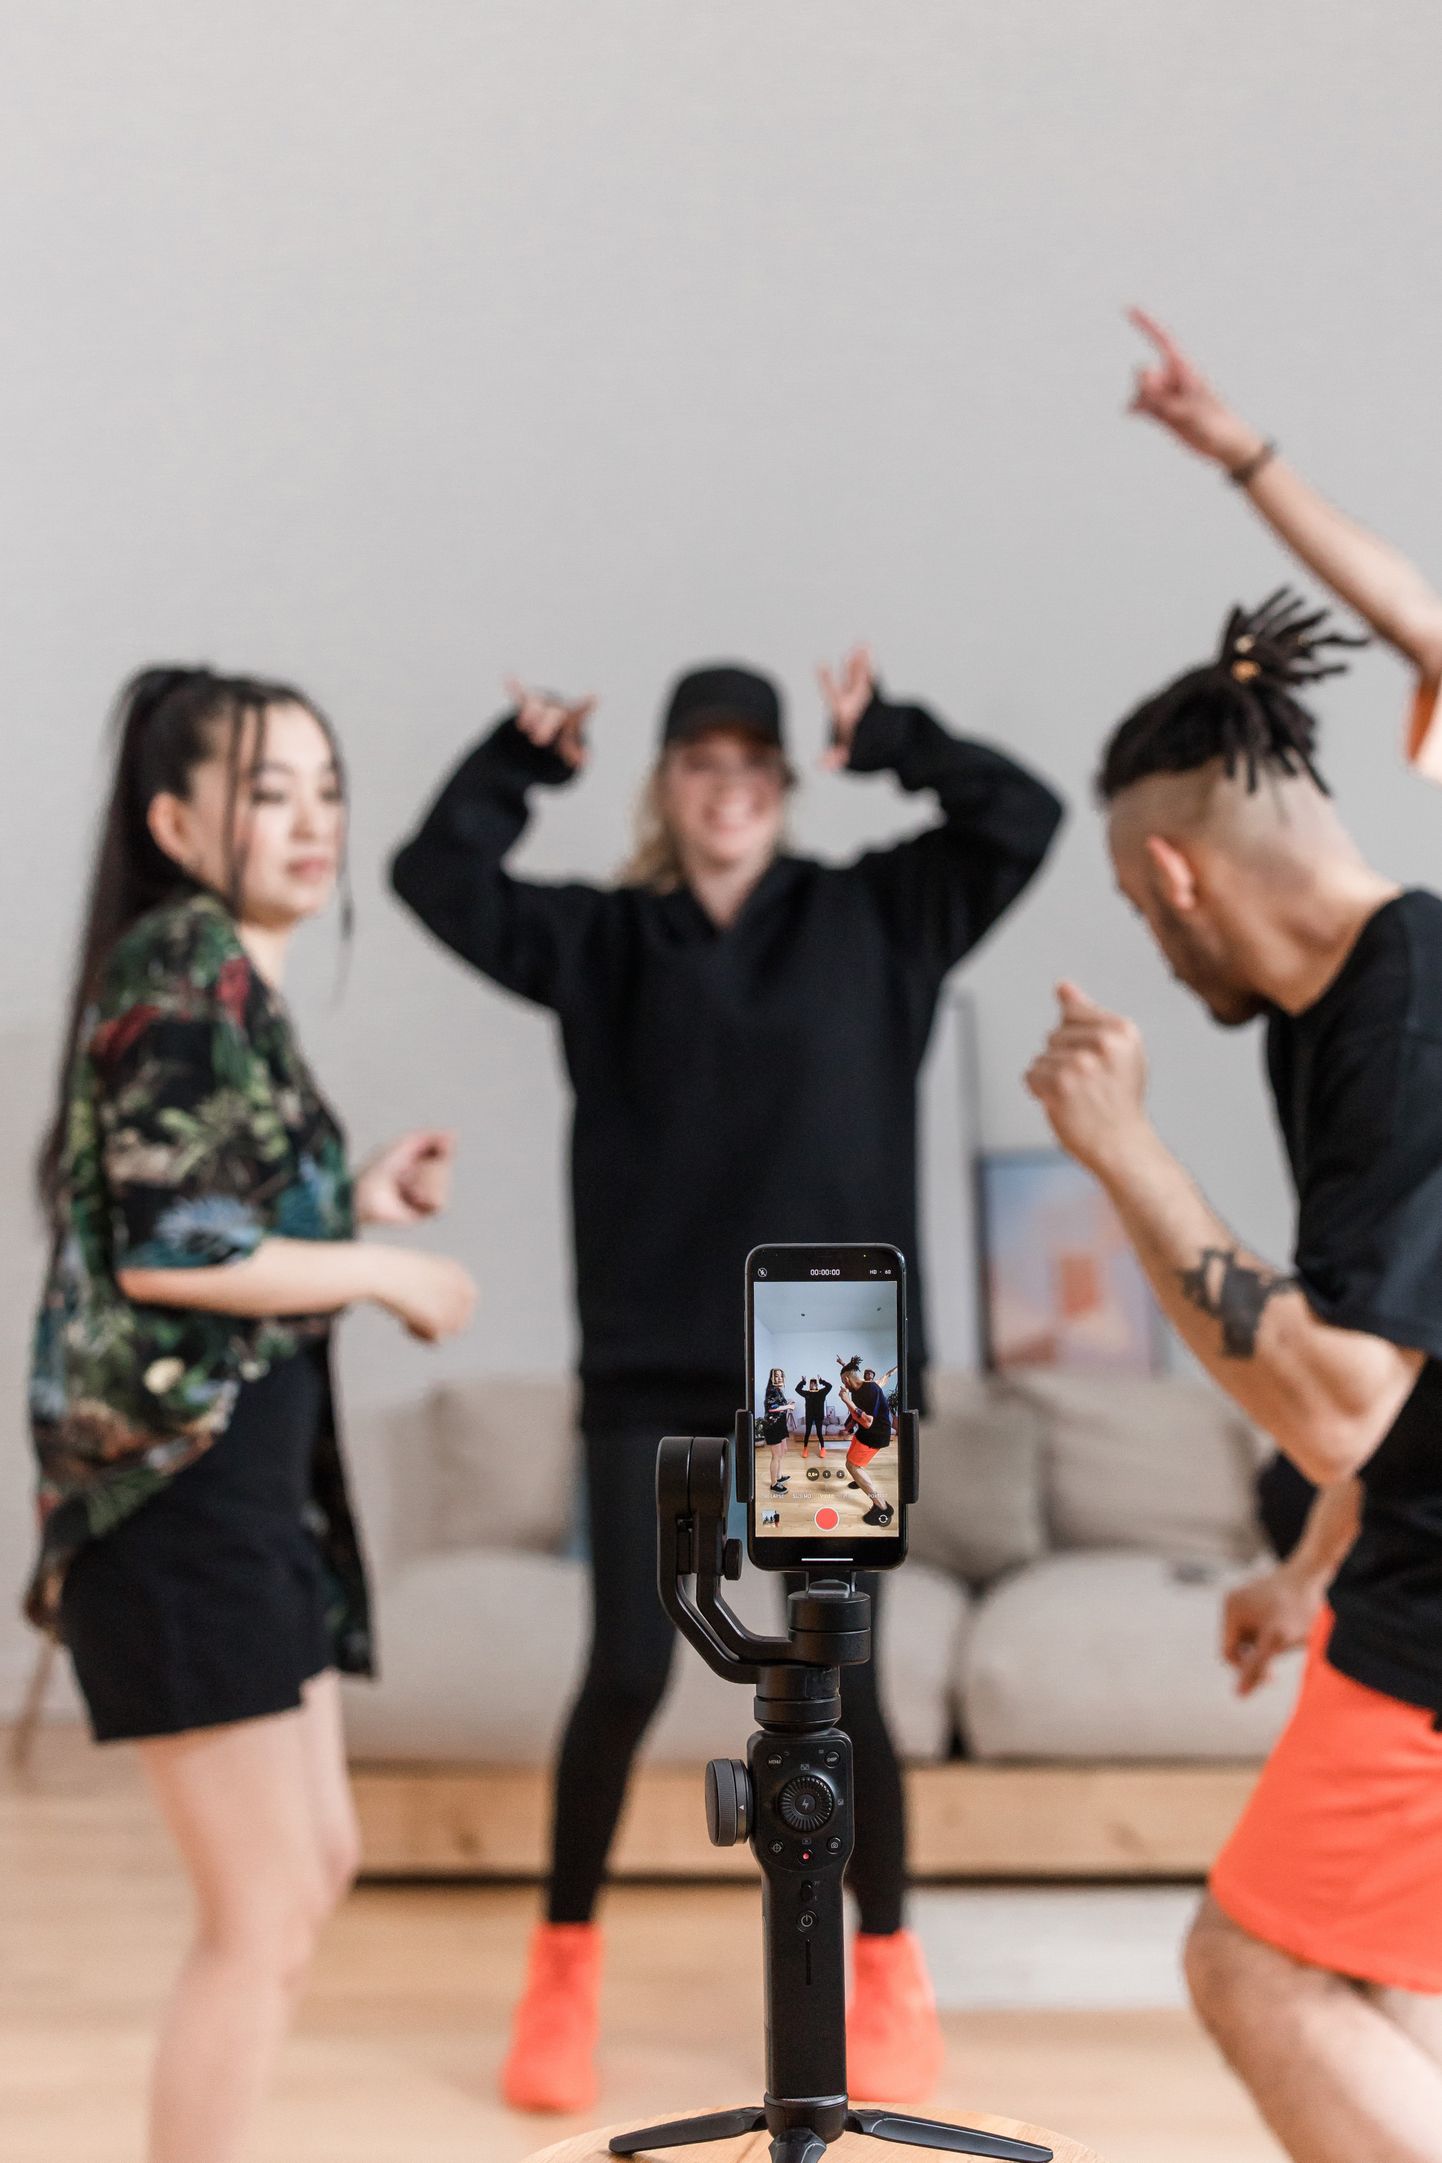 TIkToki asutas Zhang Yiming aastal 2012, kuid ülejäänud maailma jaoks sai see kättesaadavaks alles 2. augustil 2018. Äpp võimaldab kasutajatel luua lühikesi muusika- ja tantsuvideoid kasutades selleks eri visuaalseid efekte.